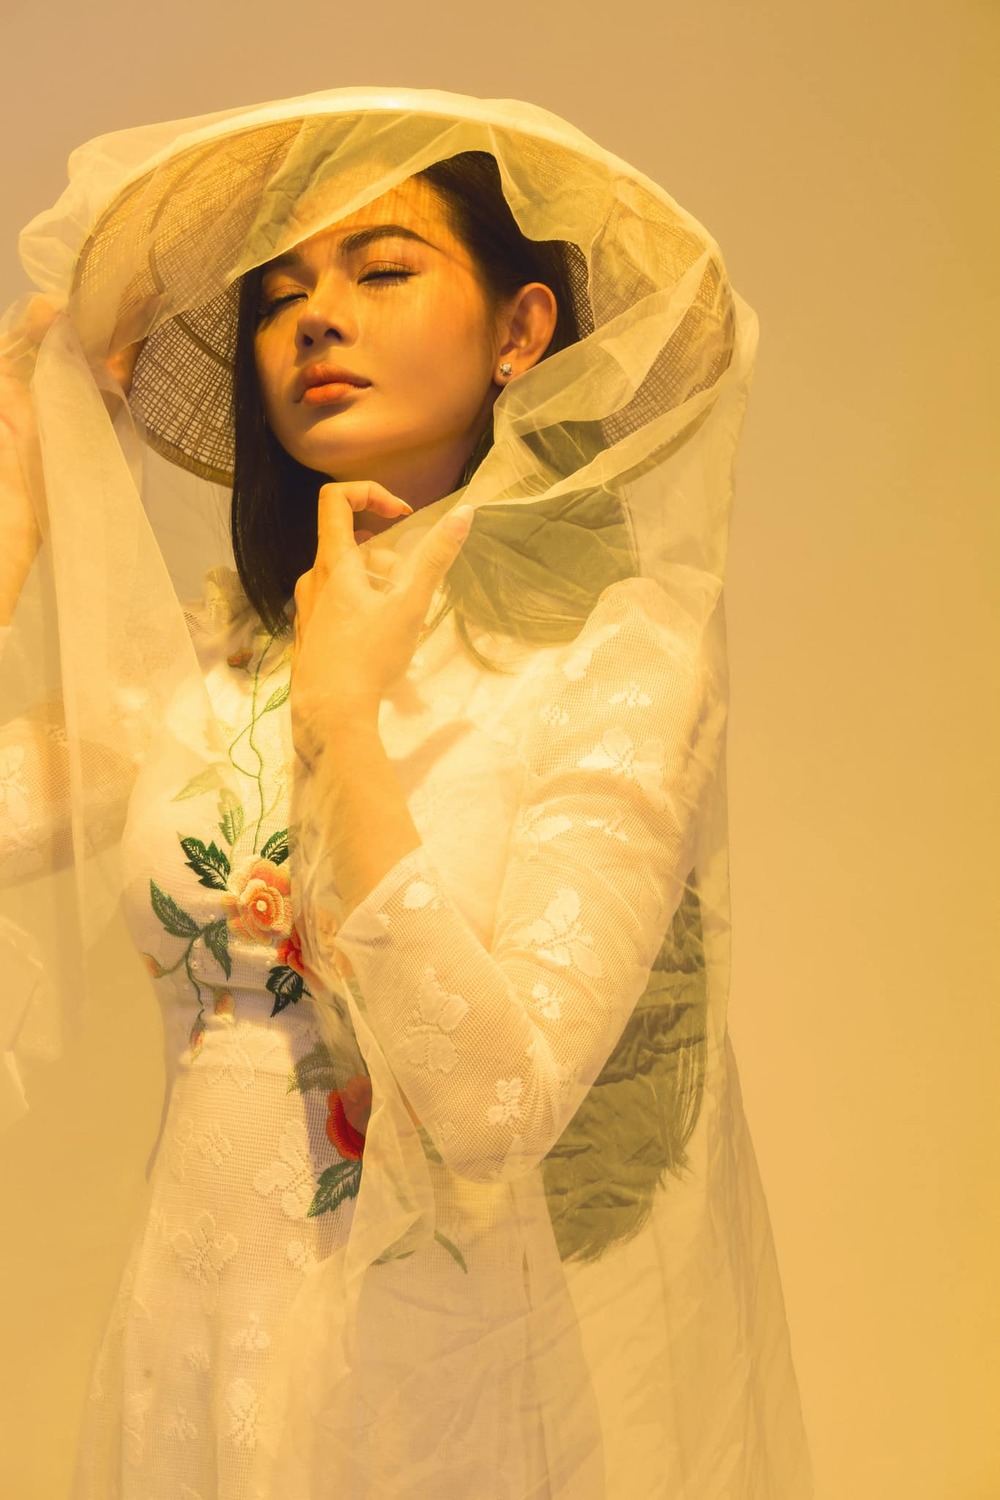  
Kaycee Chung được đánh giá cao tại cuộc thi Hoa hậu Chuyển giới Việt Nam 2020.